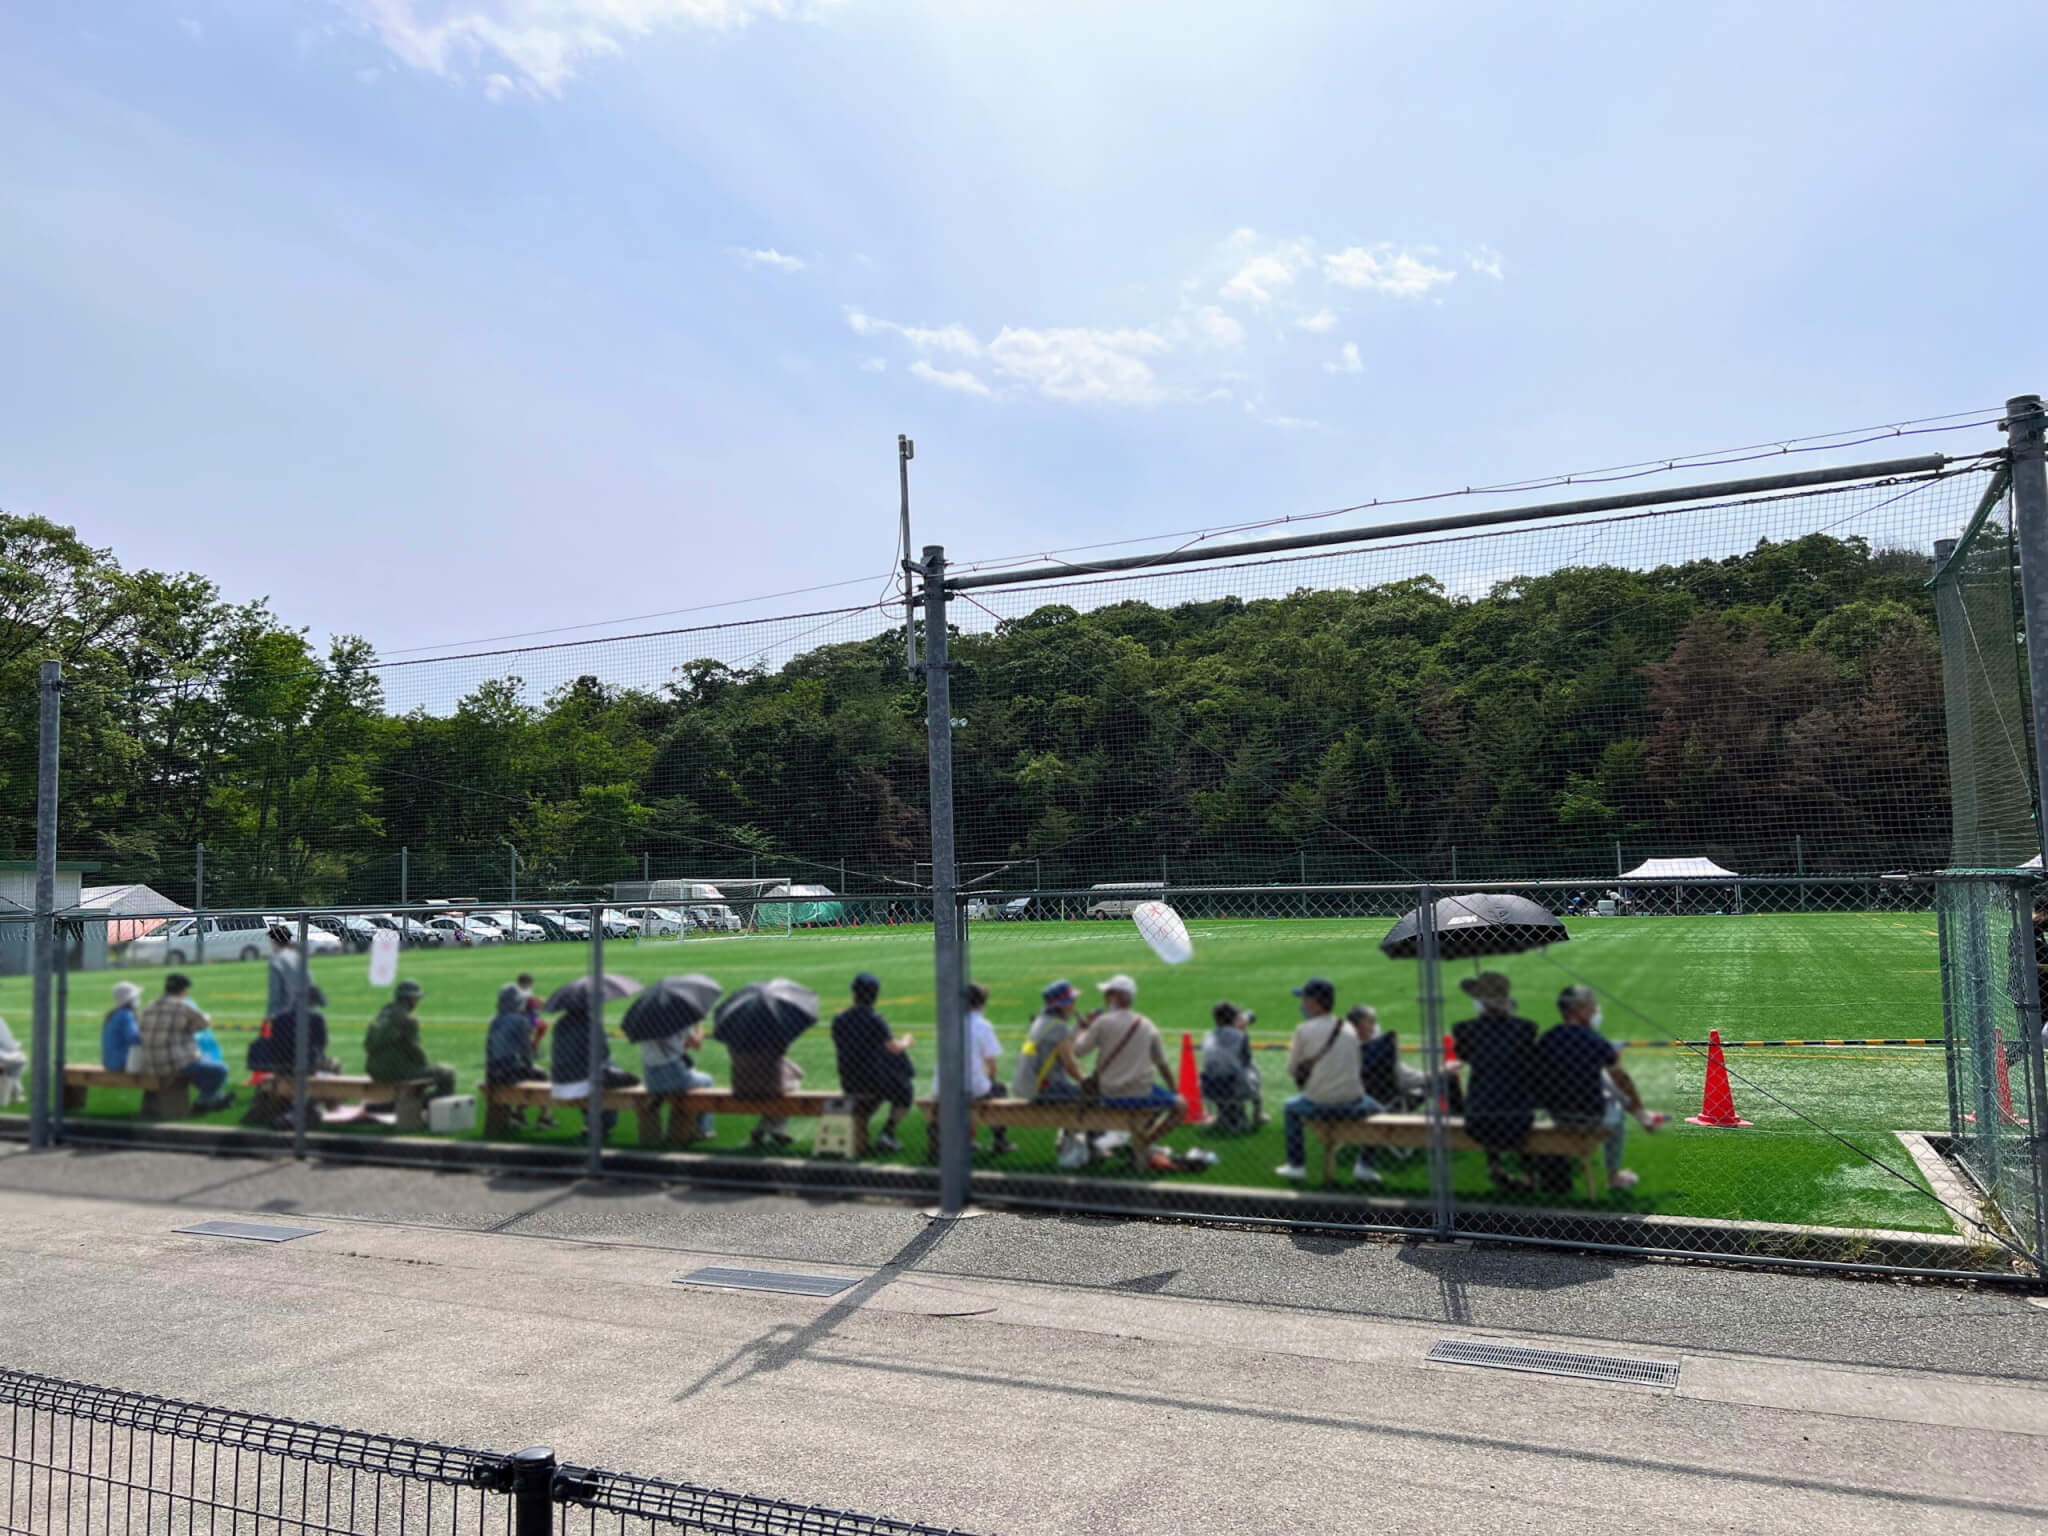 チェントクオーレハリマとムサシオープンデパート朝市のコラボ開催のフェンス内観戦の様子